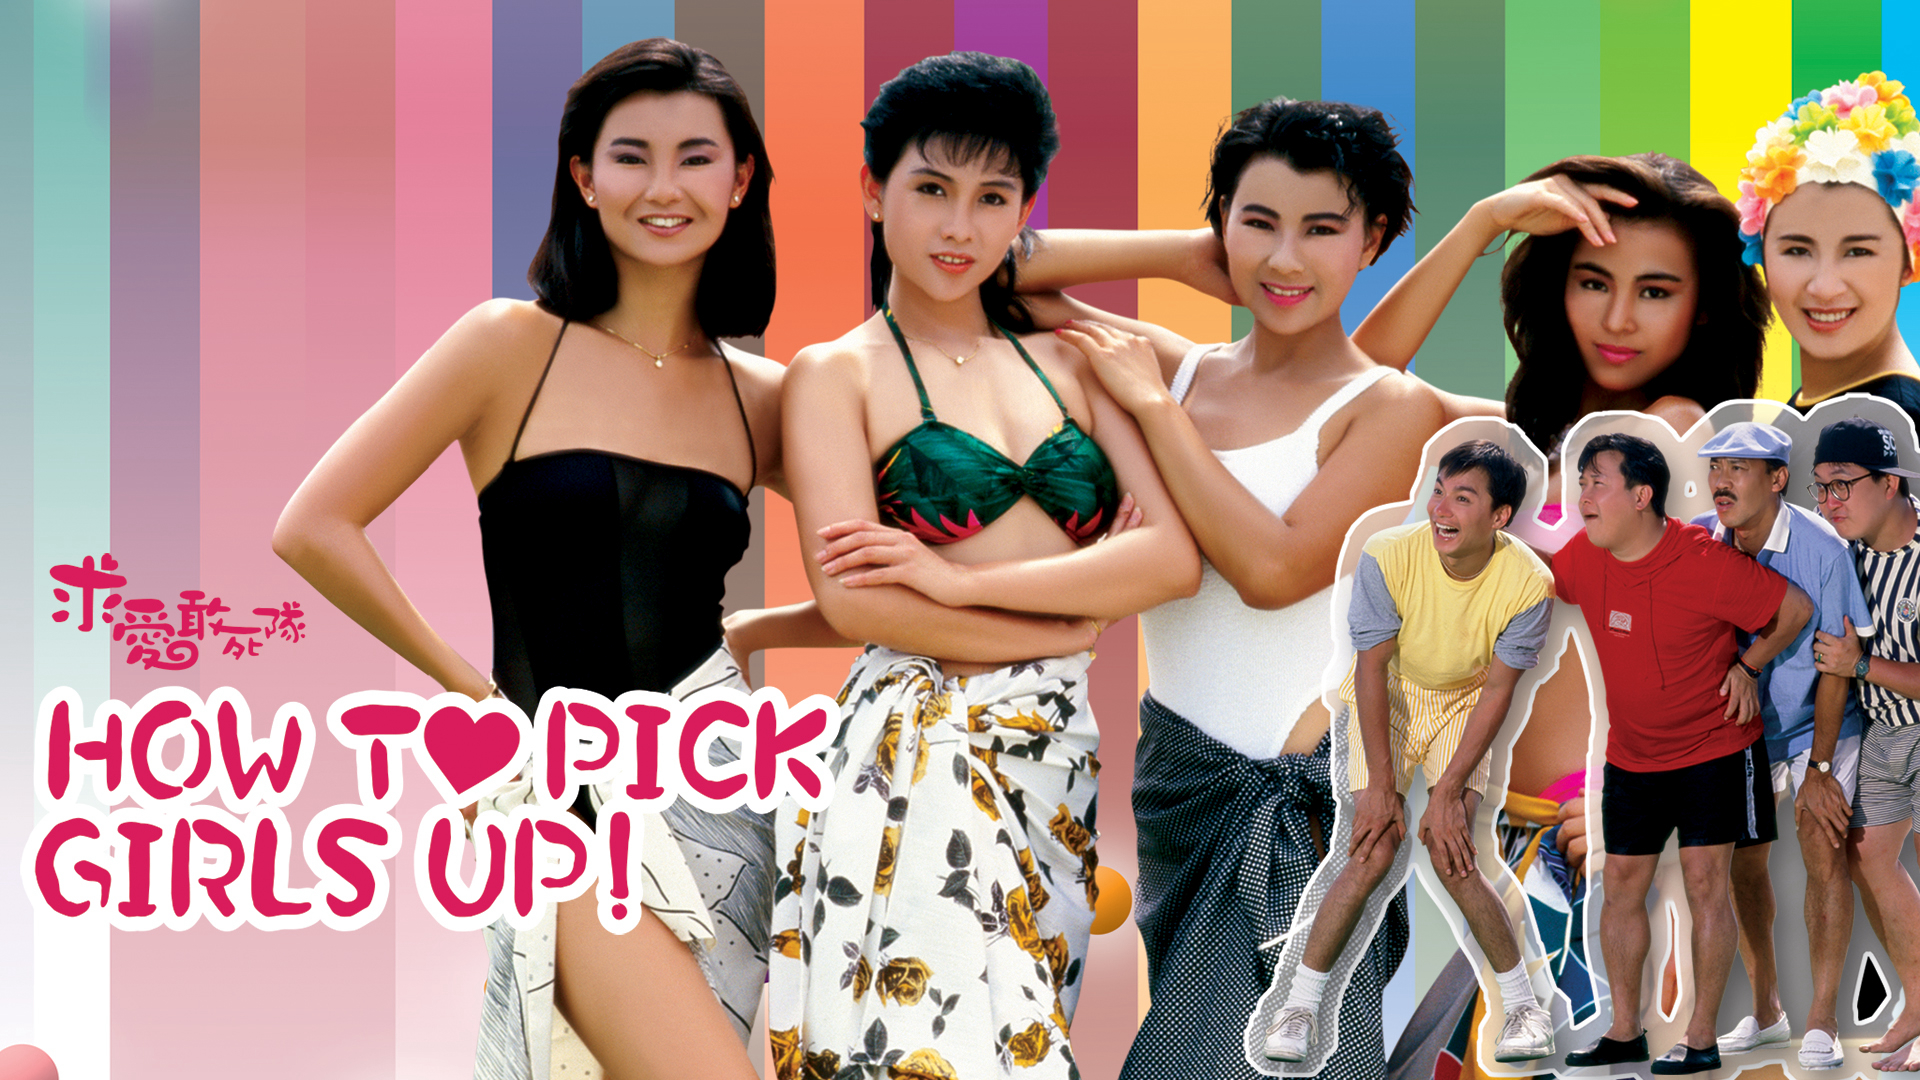 How to Pick Girls Up! / How to Pick Girls Up! (1988)